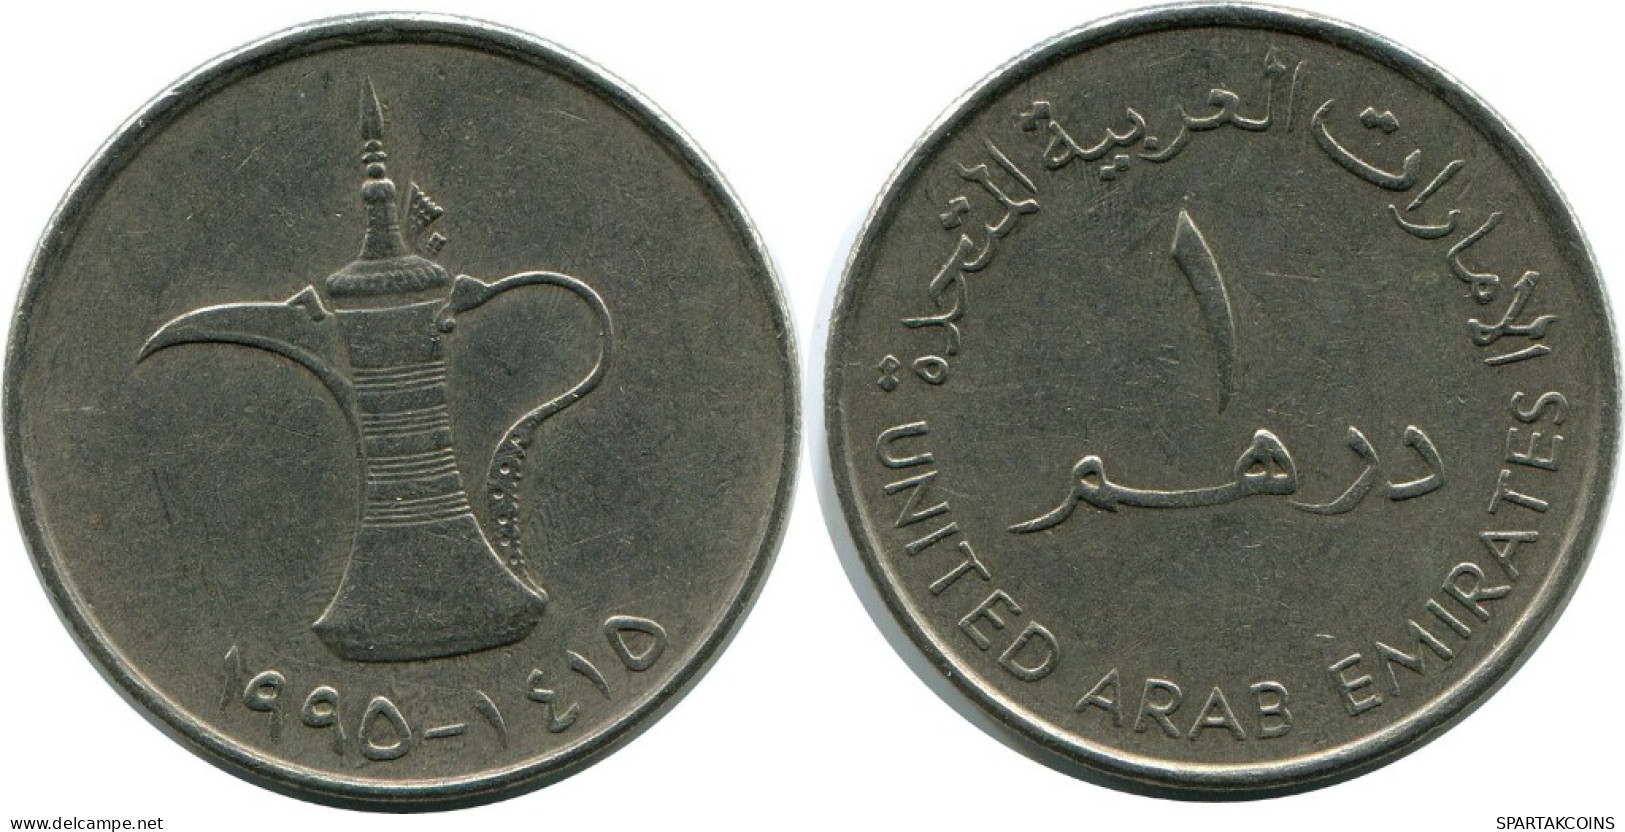 1 DIRHAM 1990 UAE UNITED ARAB EMIRATES Islamic Coin #AH994.U.A - Emirats Arabes Unis